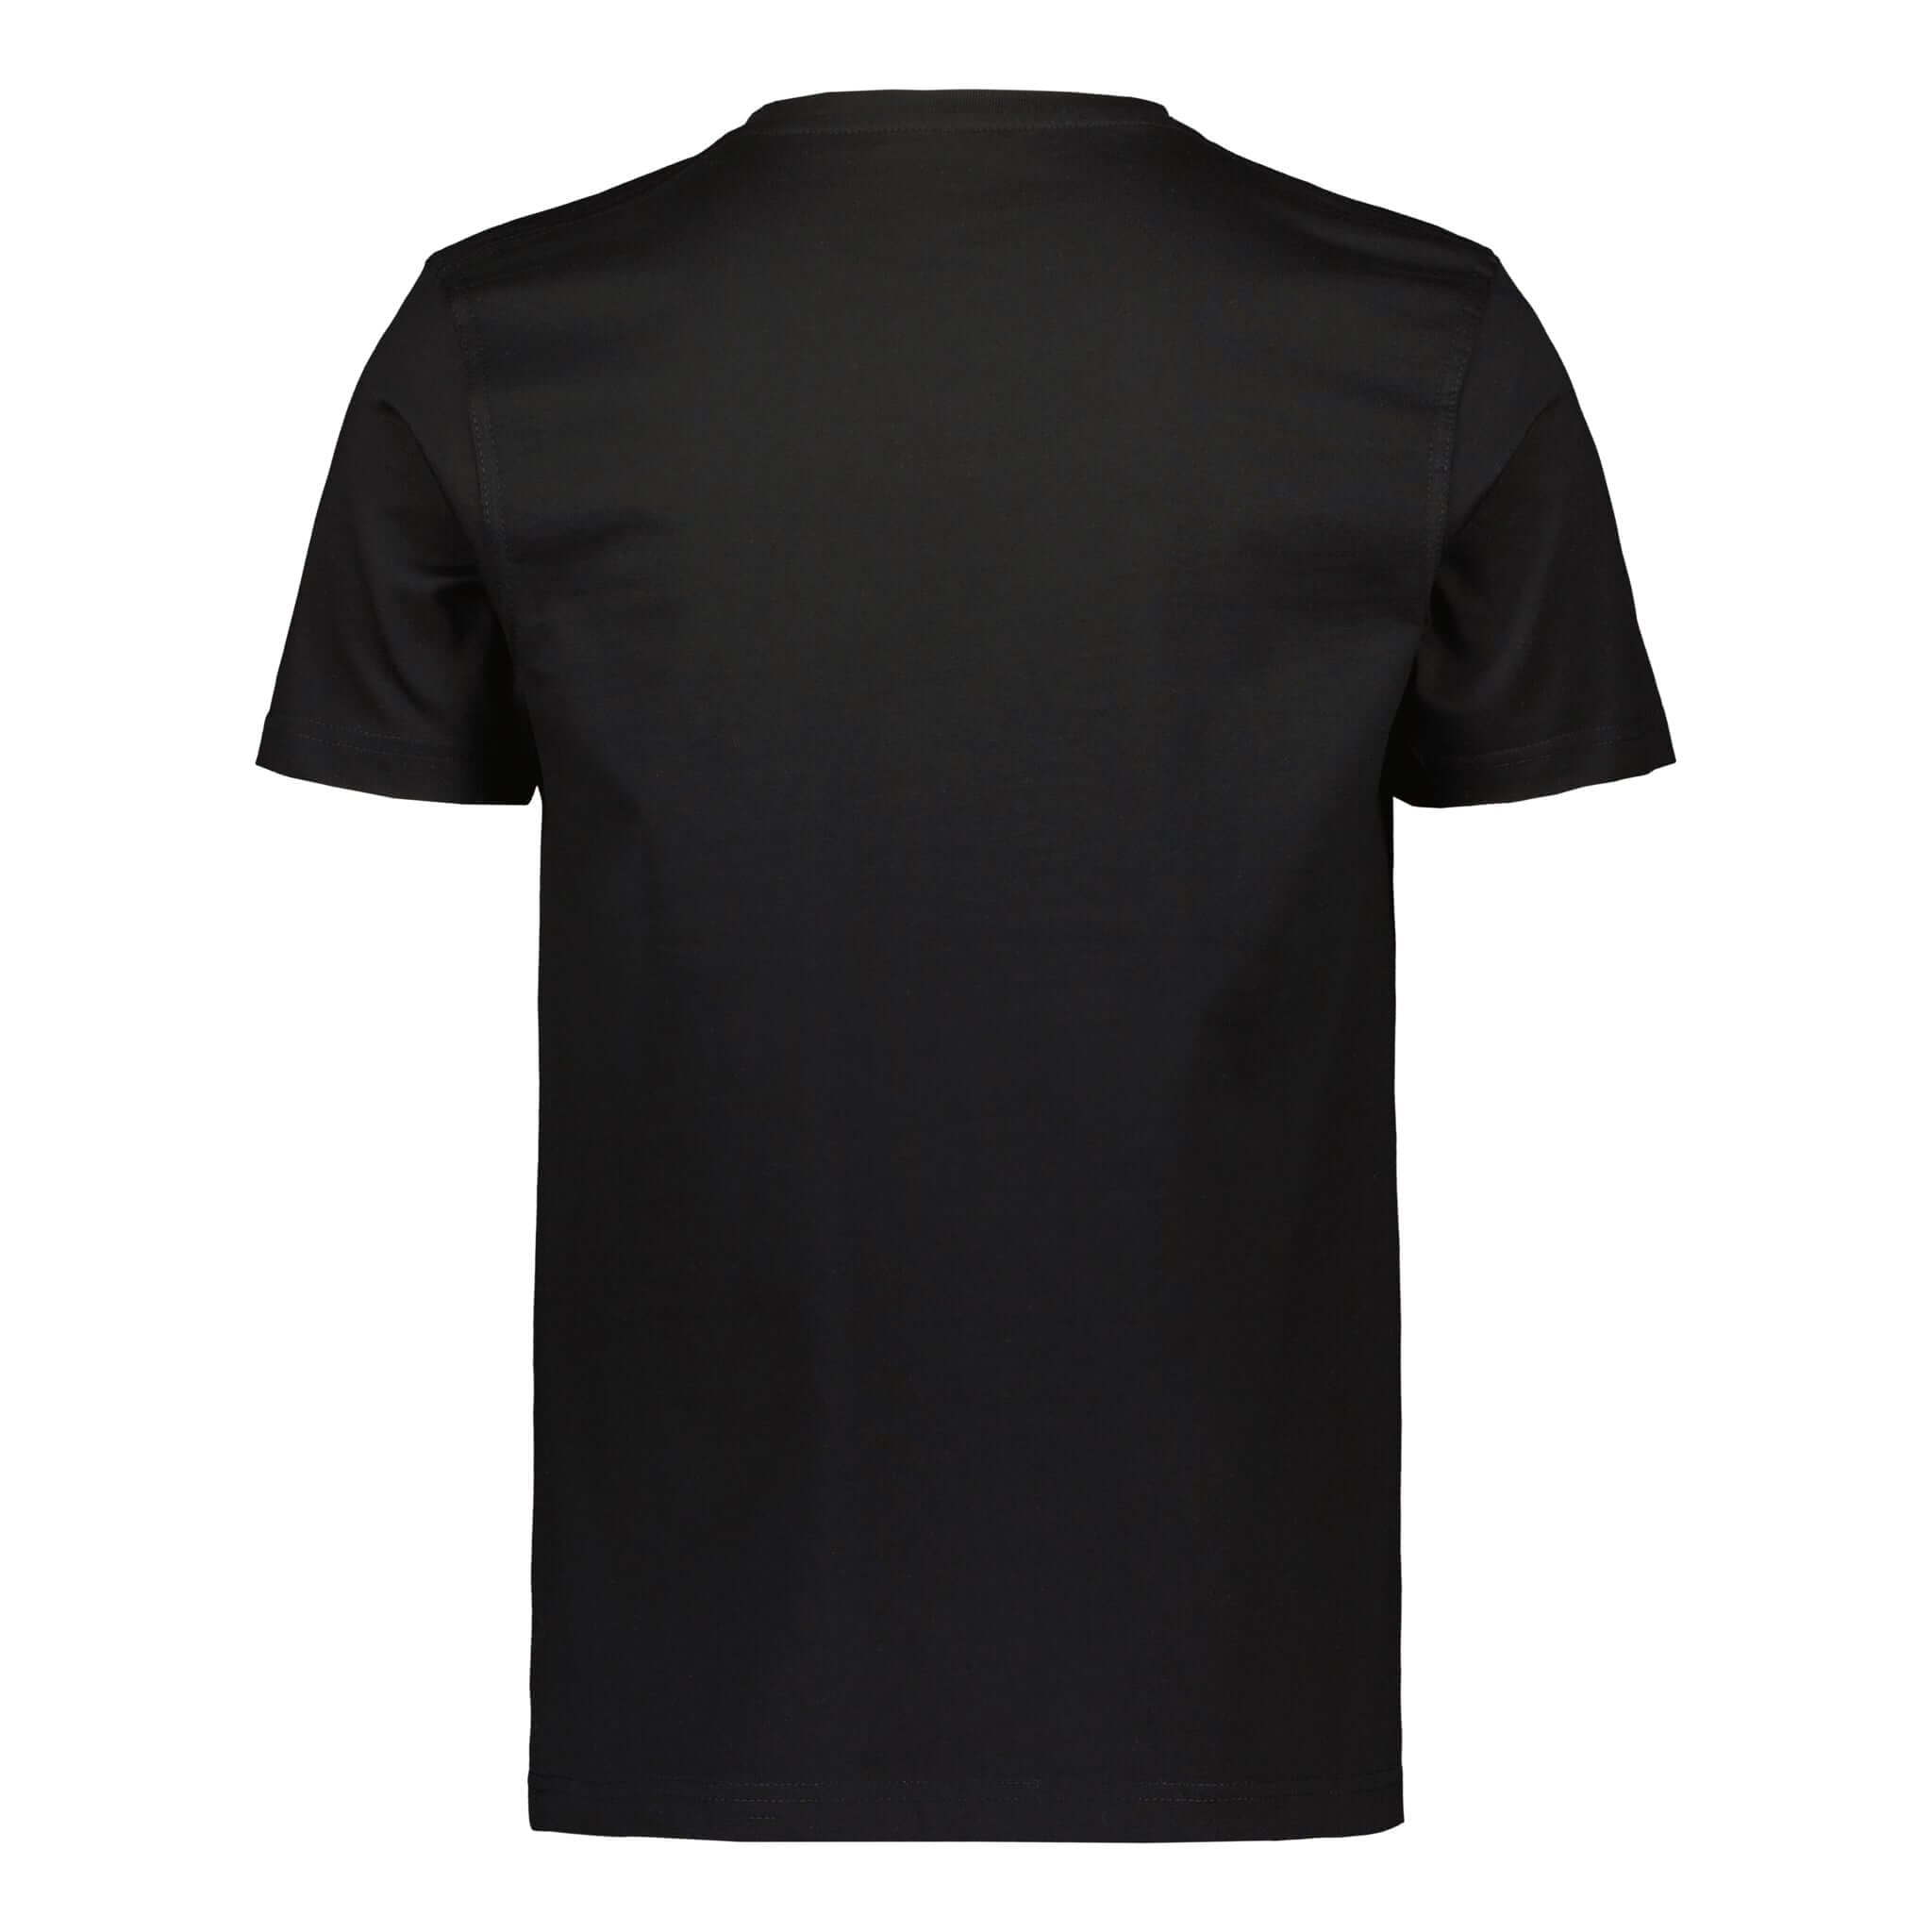 ENCE Basic T-Shirt - ENCE Shop